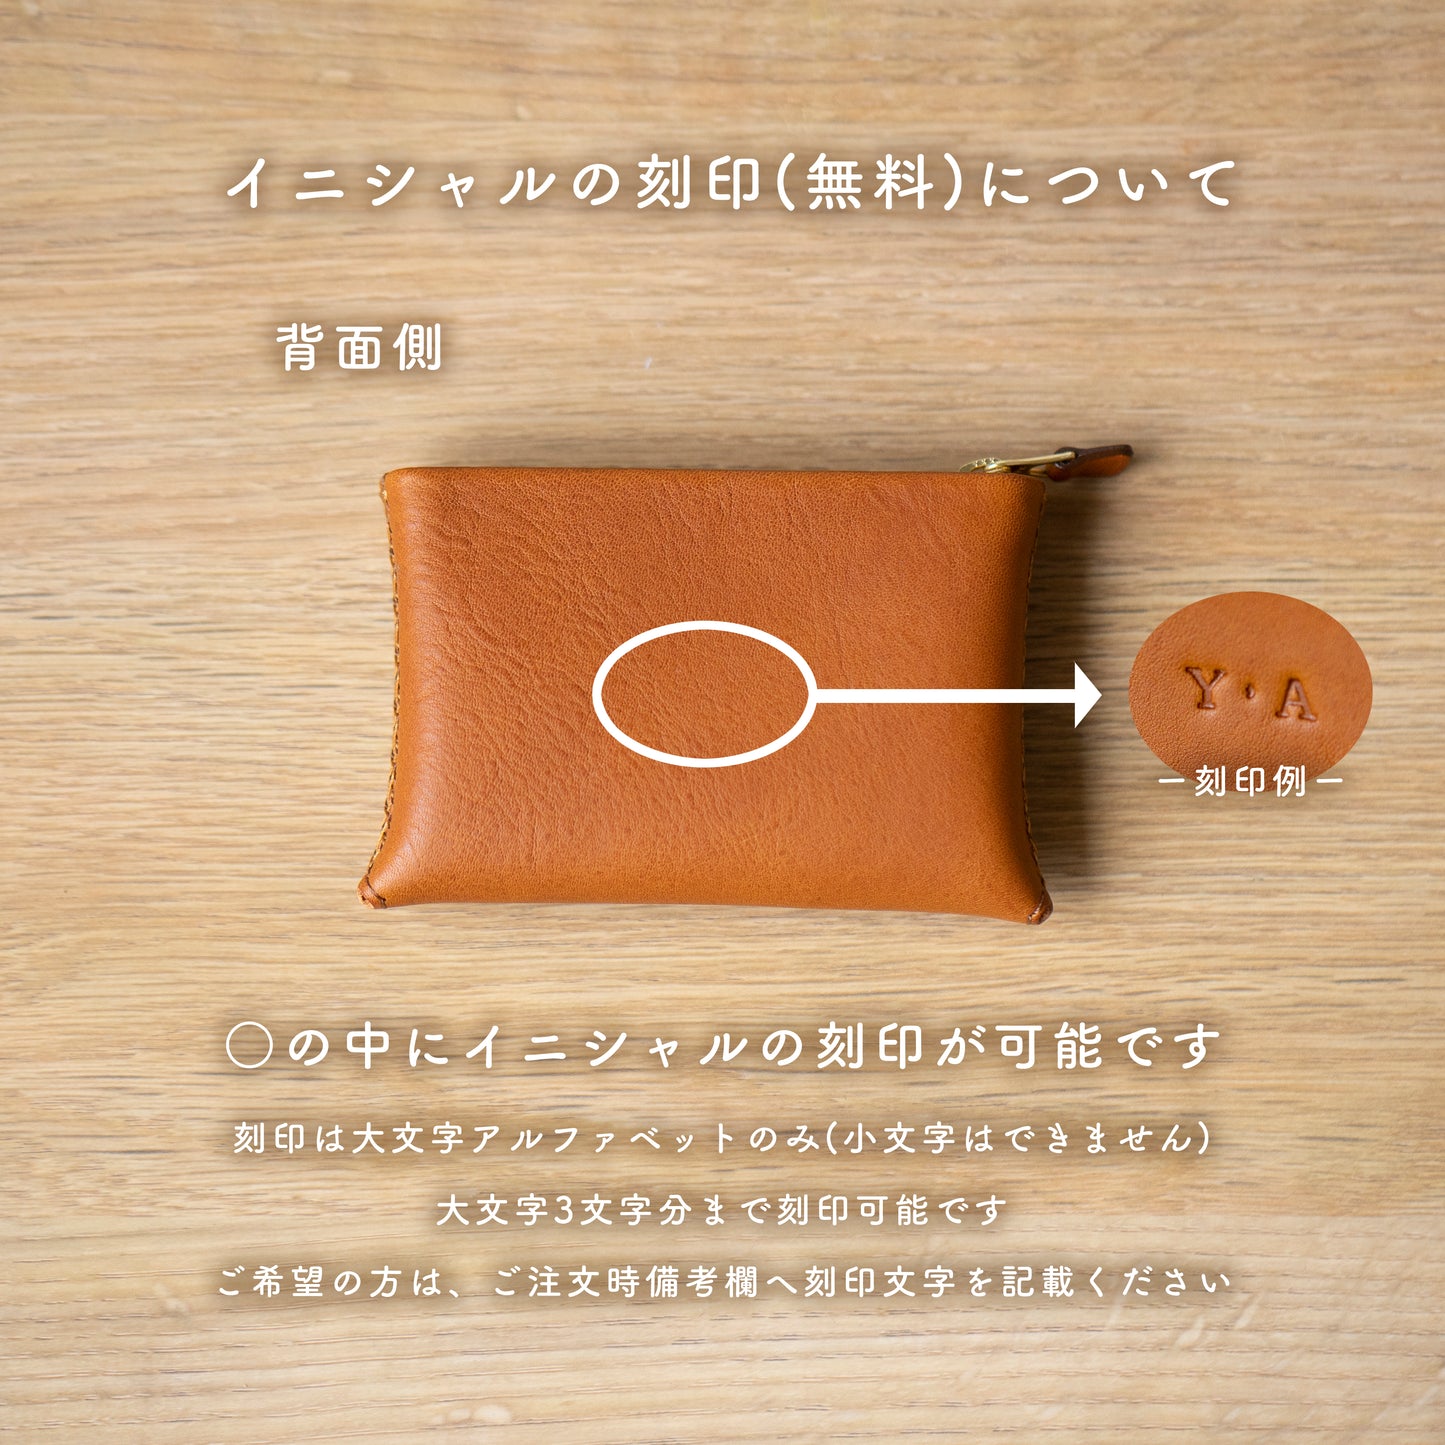 ジグザグ手縫いのミニ財布 (ブラウン)